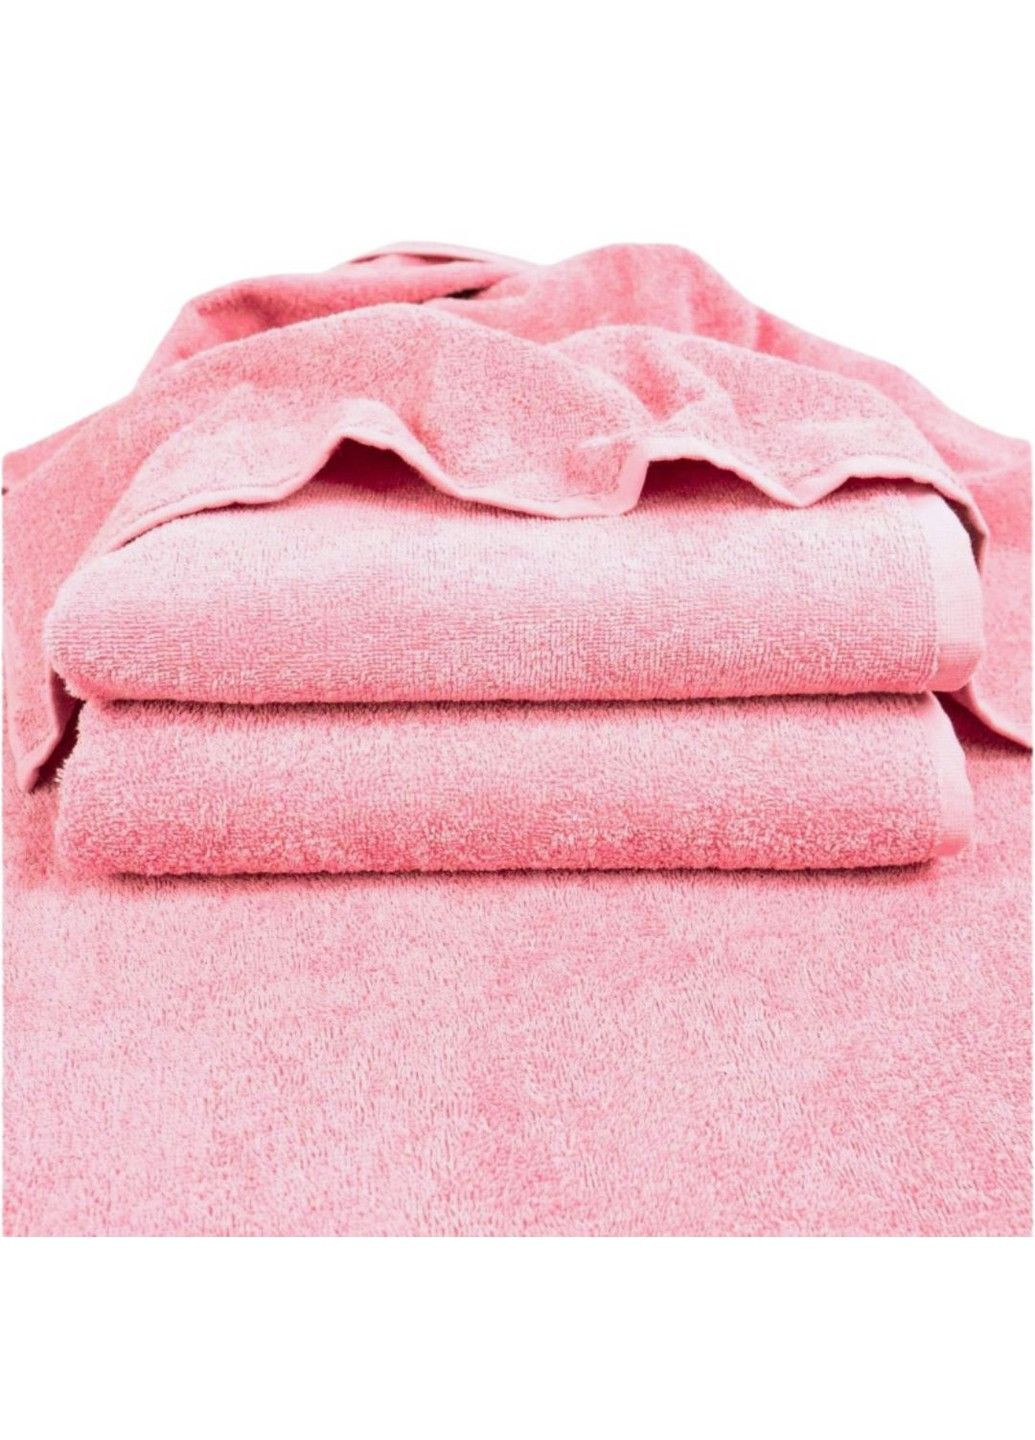 GM Textile полотенце махровое, 70*140 см коралловый производство - Узбекистан